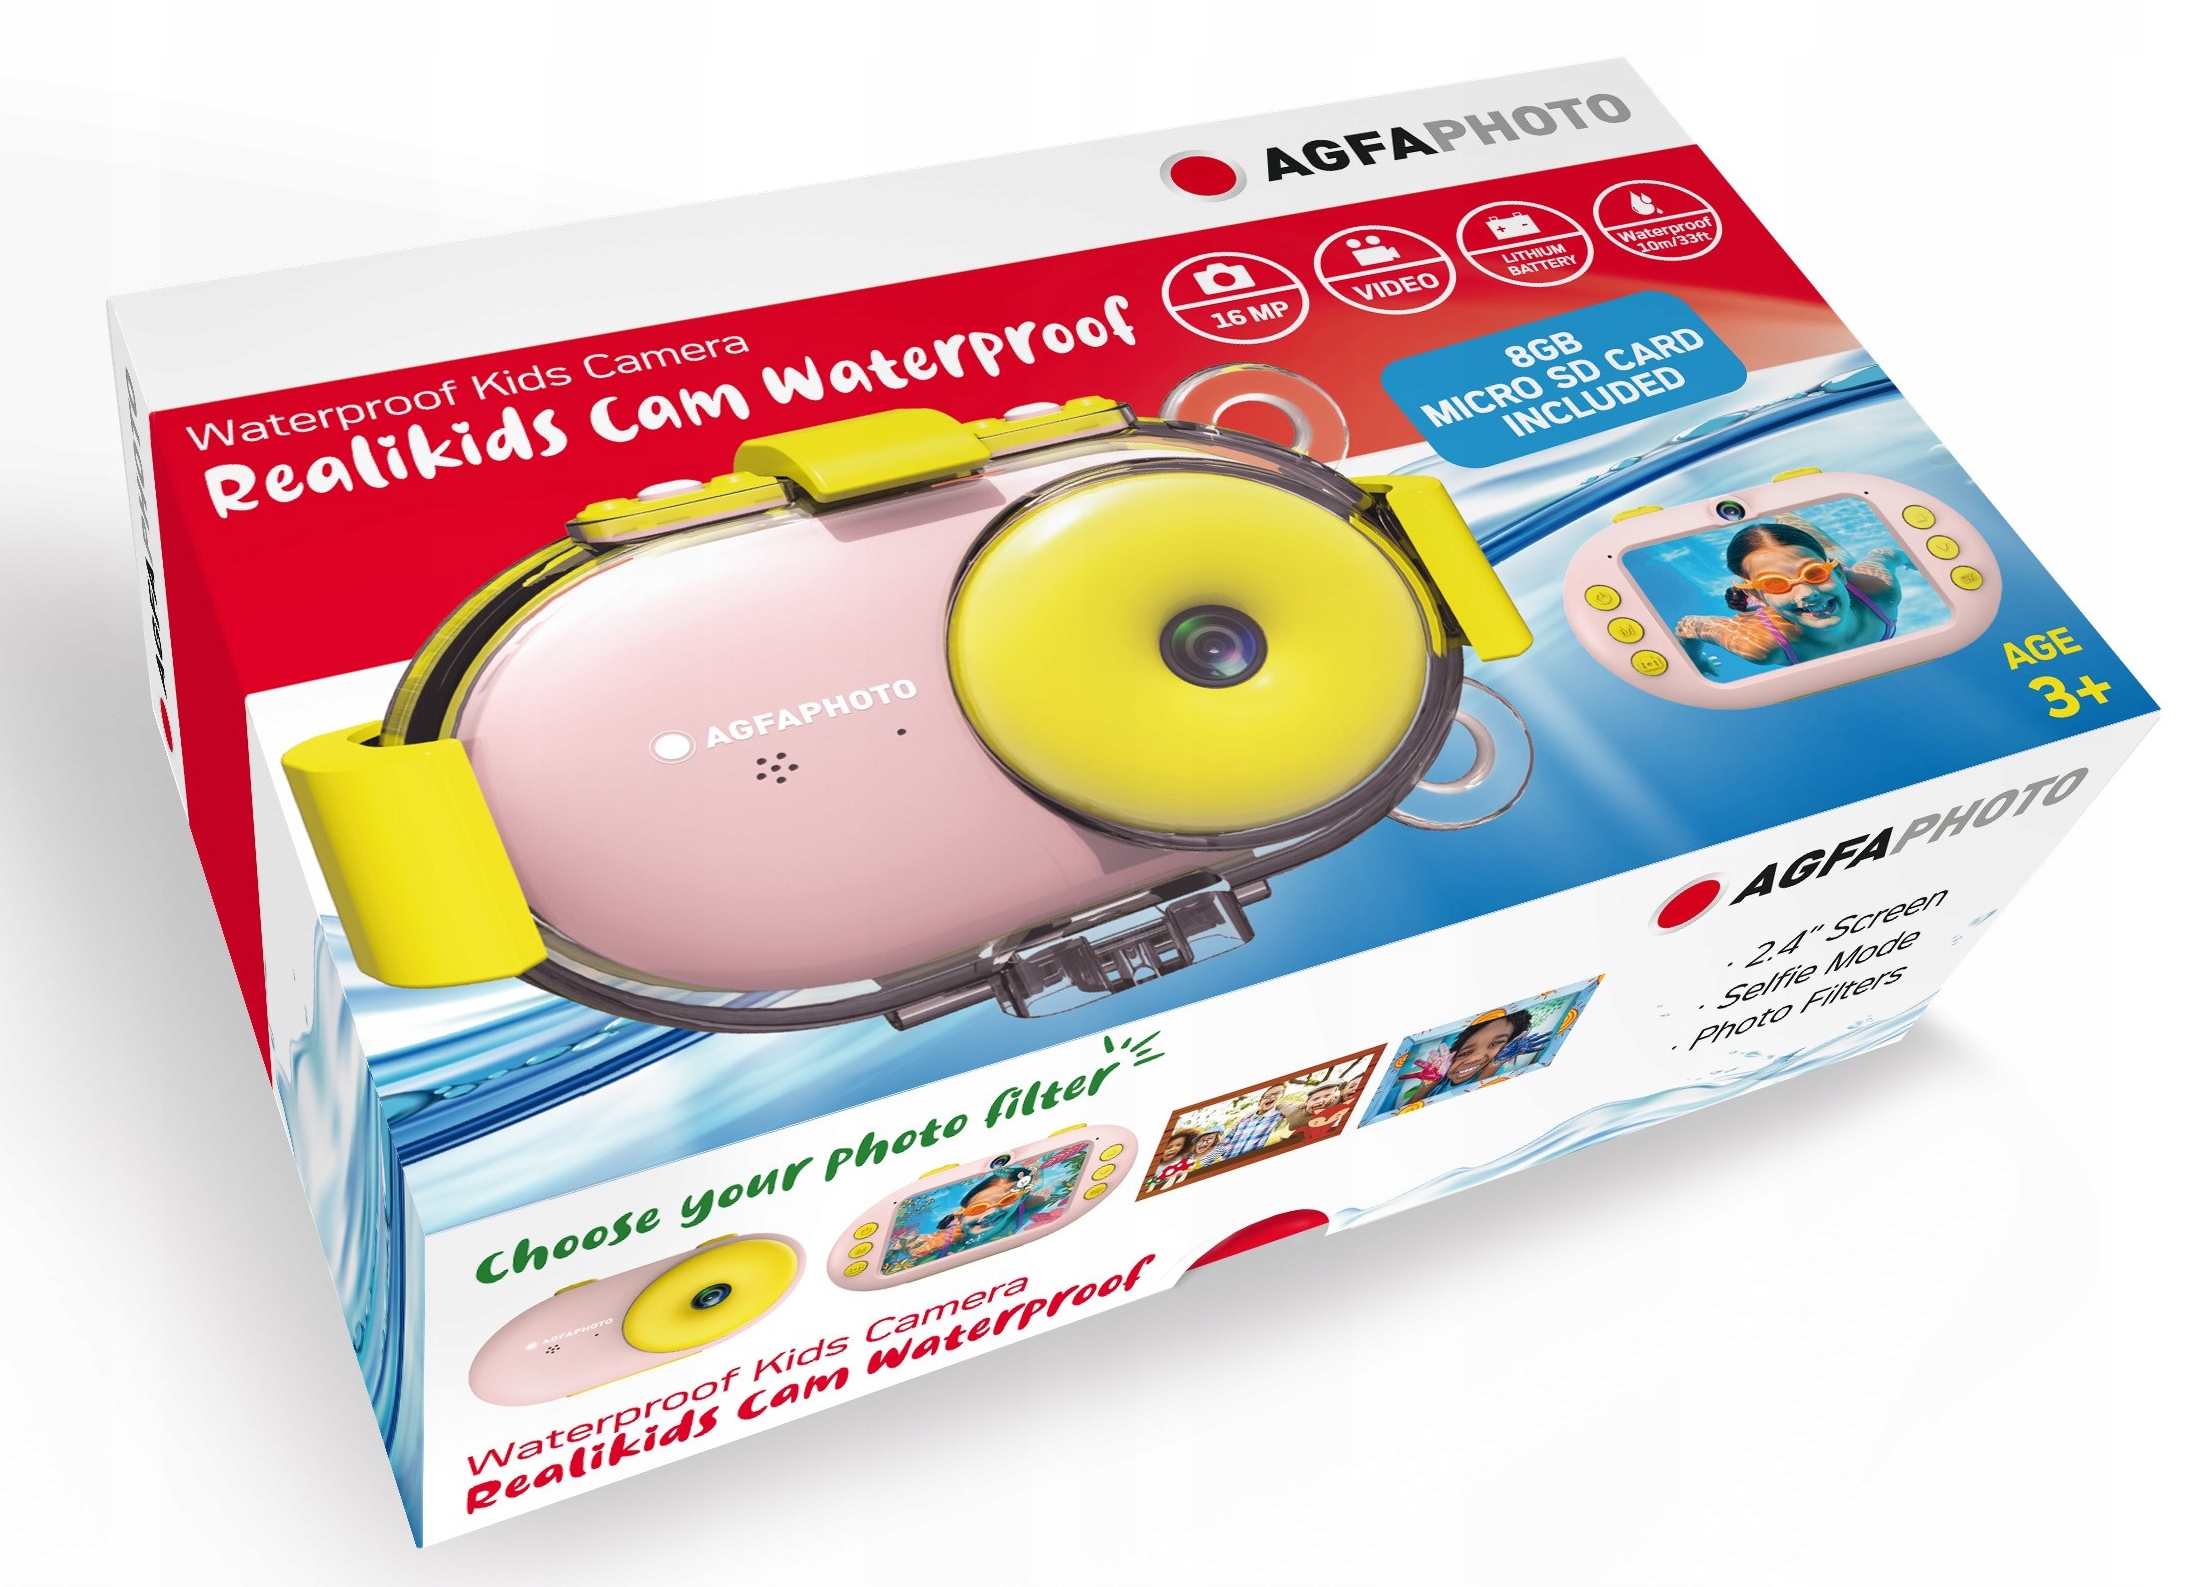 AGFA камера Цифровая подводная камера 10m + карта 8GB модель Realikids Cam Waterproof